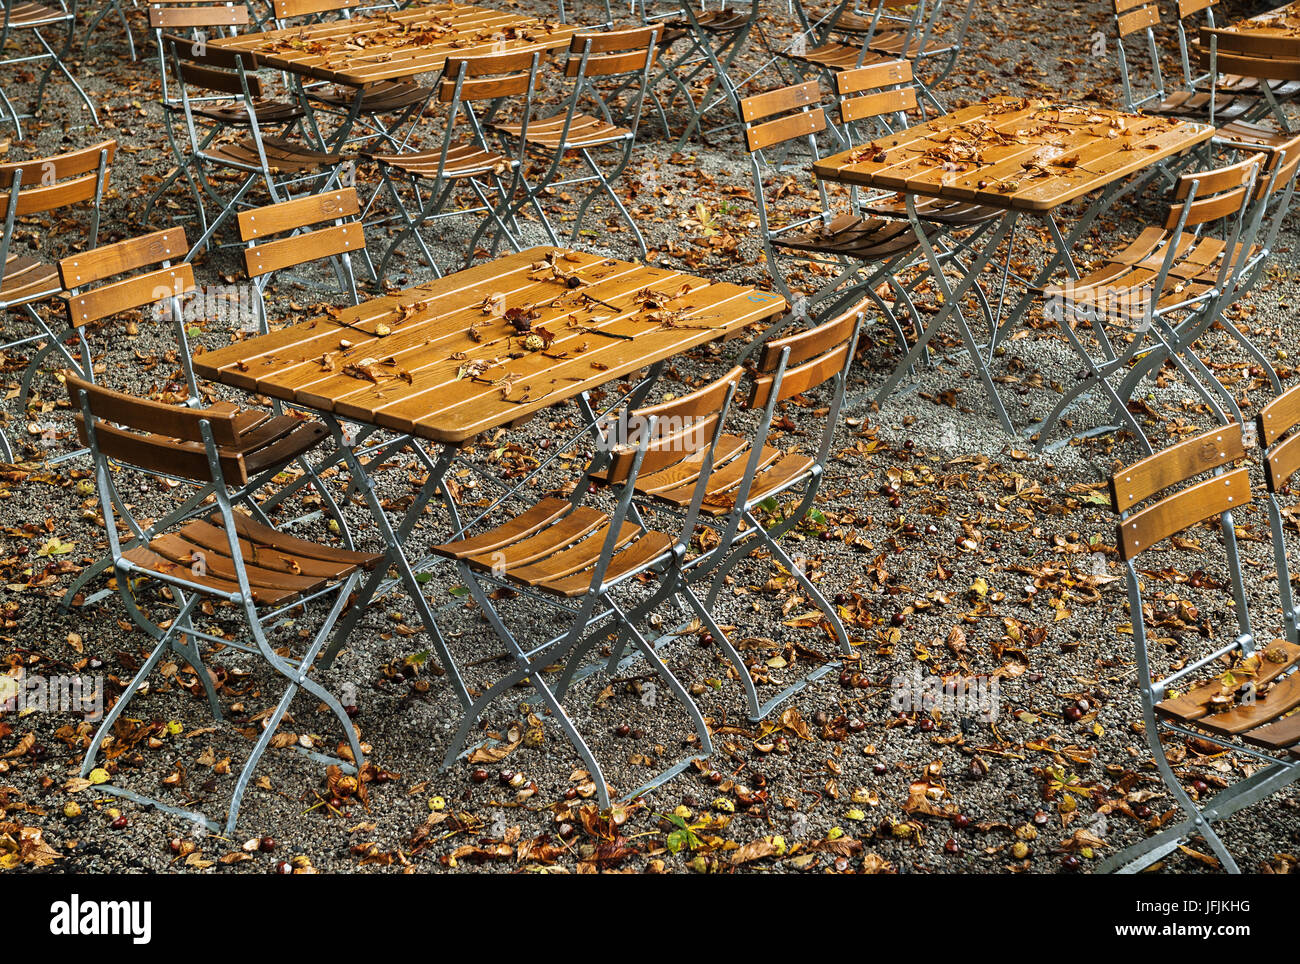 La fin de l'automne dans le jardin Banque D'Images